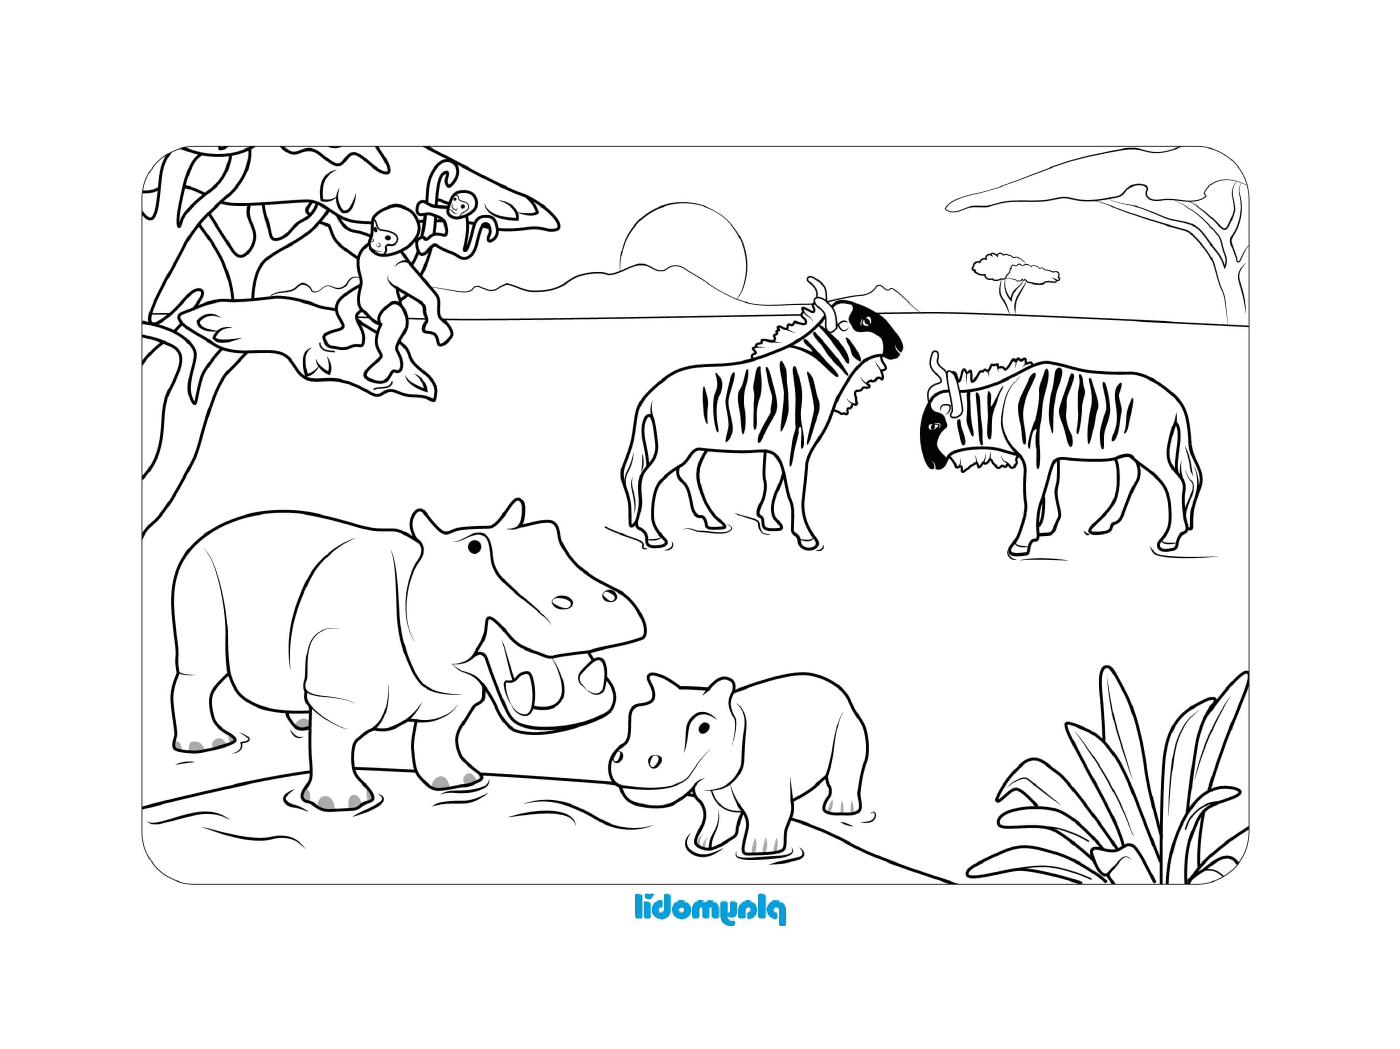  Zebra and hippopotamus in a field 